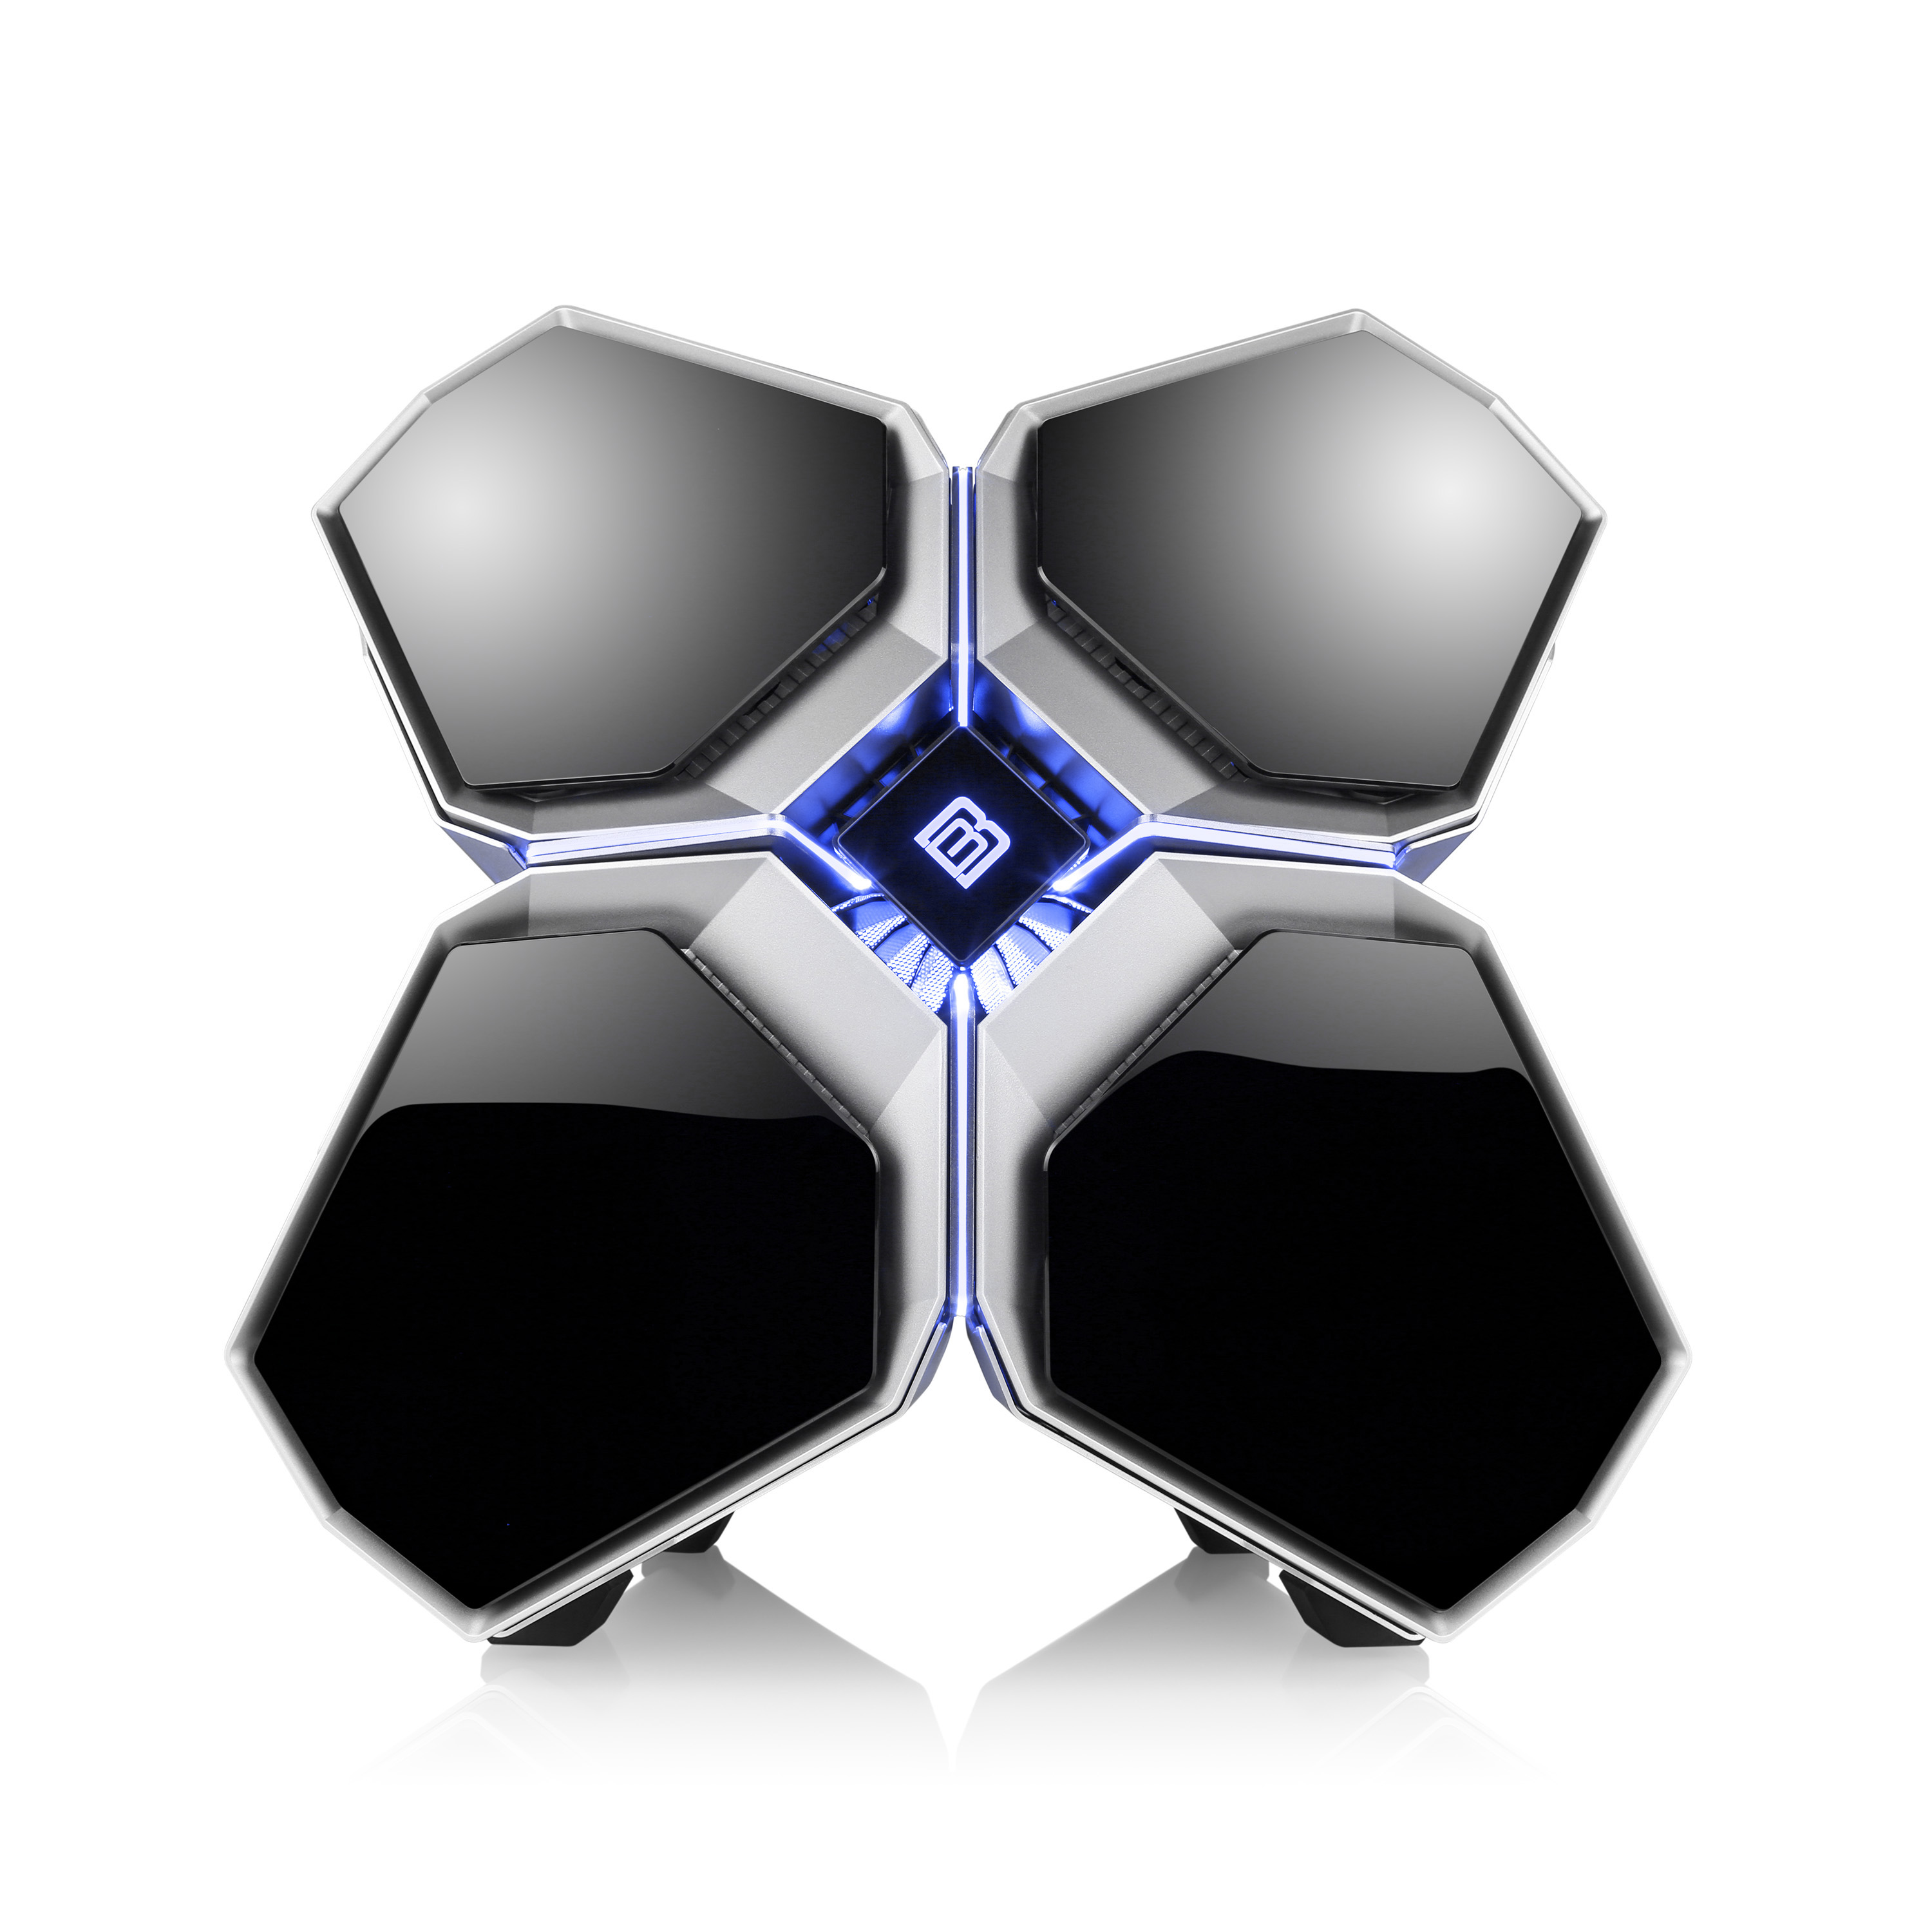 BOOSTBOXX Quadstellar, RGB Beleuchtung mit silber PC Steuerung Gehäuse